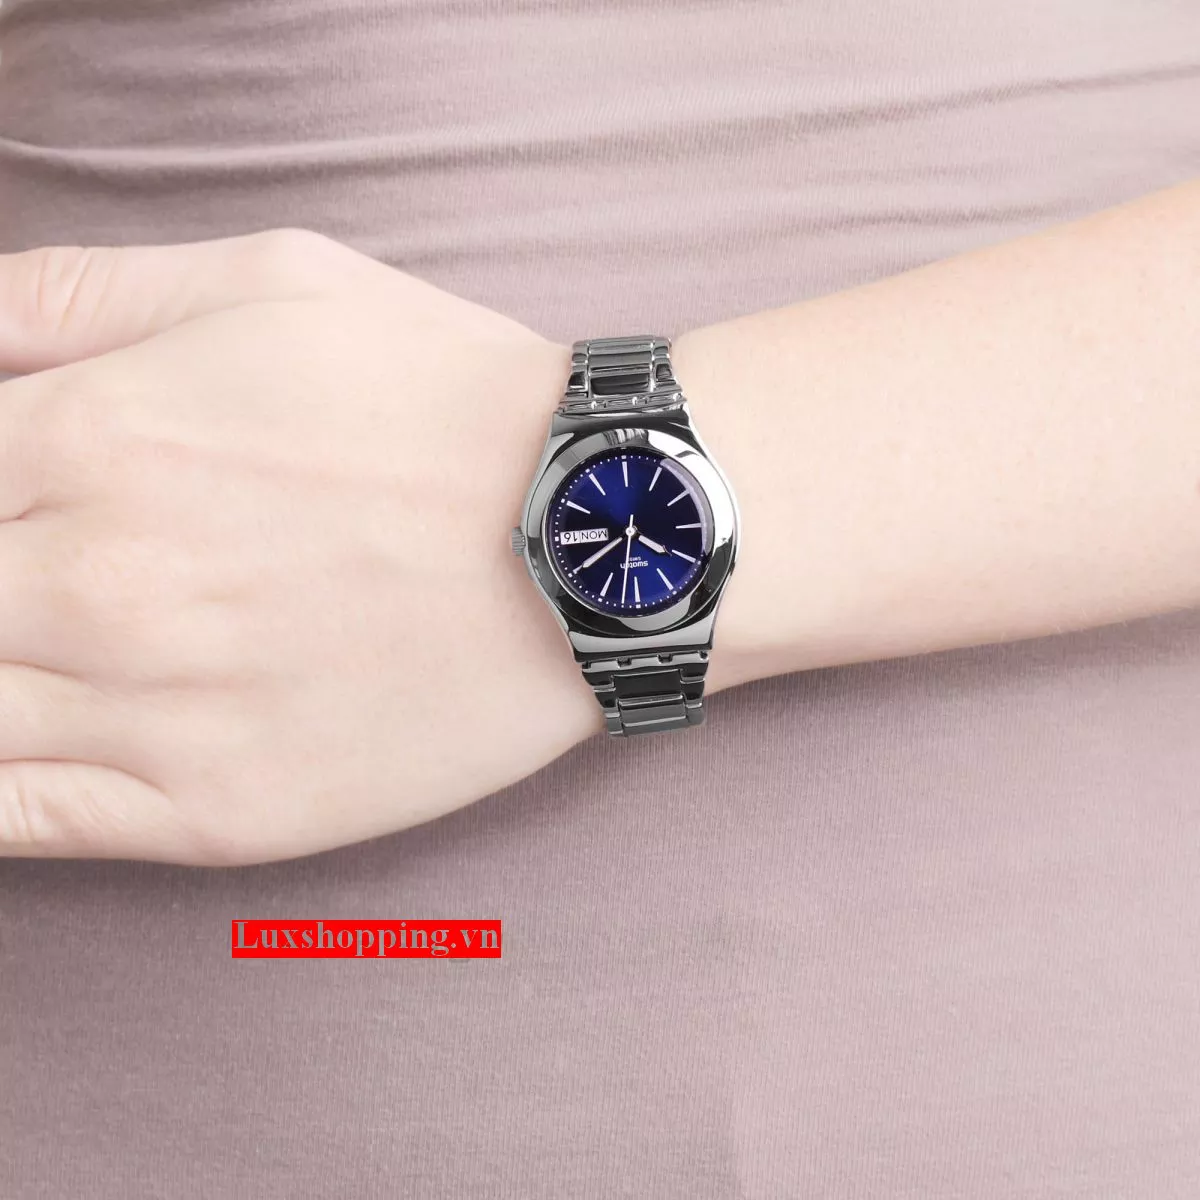 Swatch Women's Irony Swiss Quartz Watch with Blue 31mm